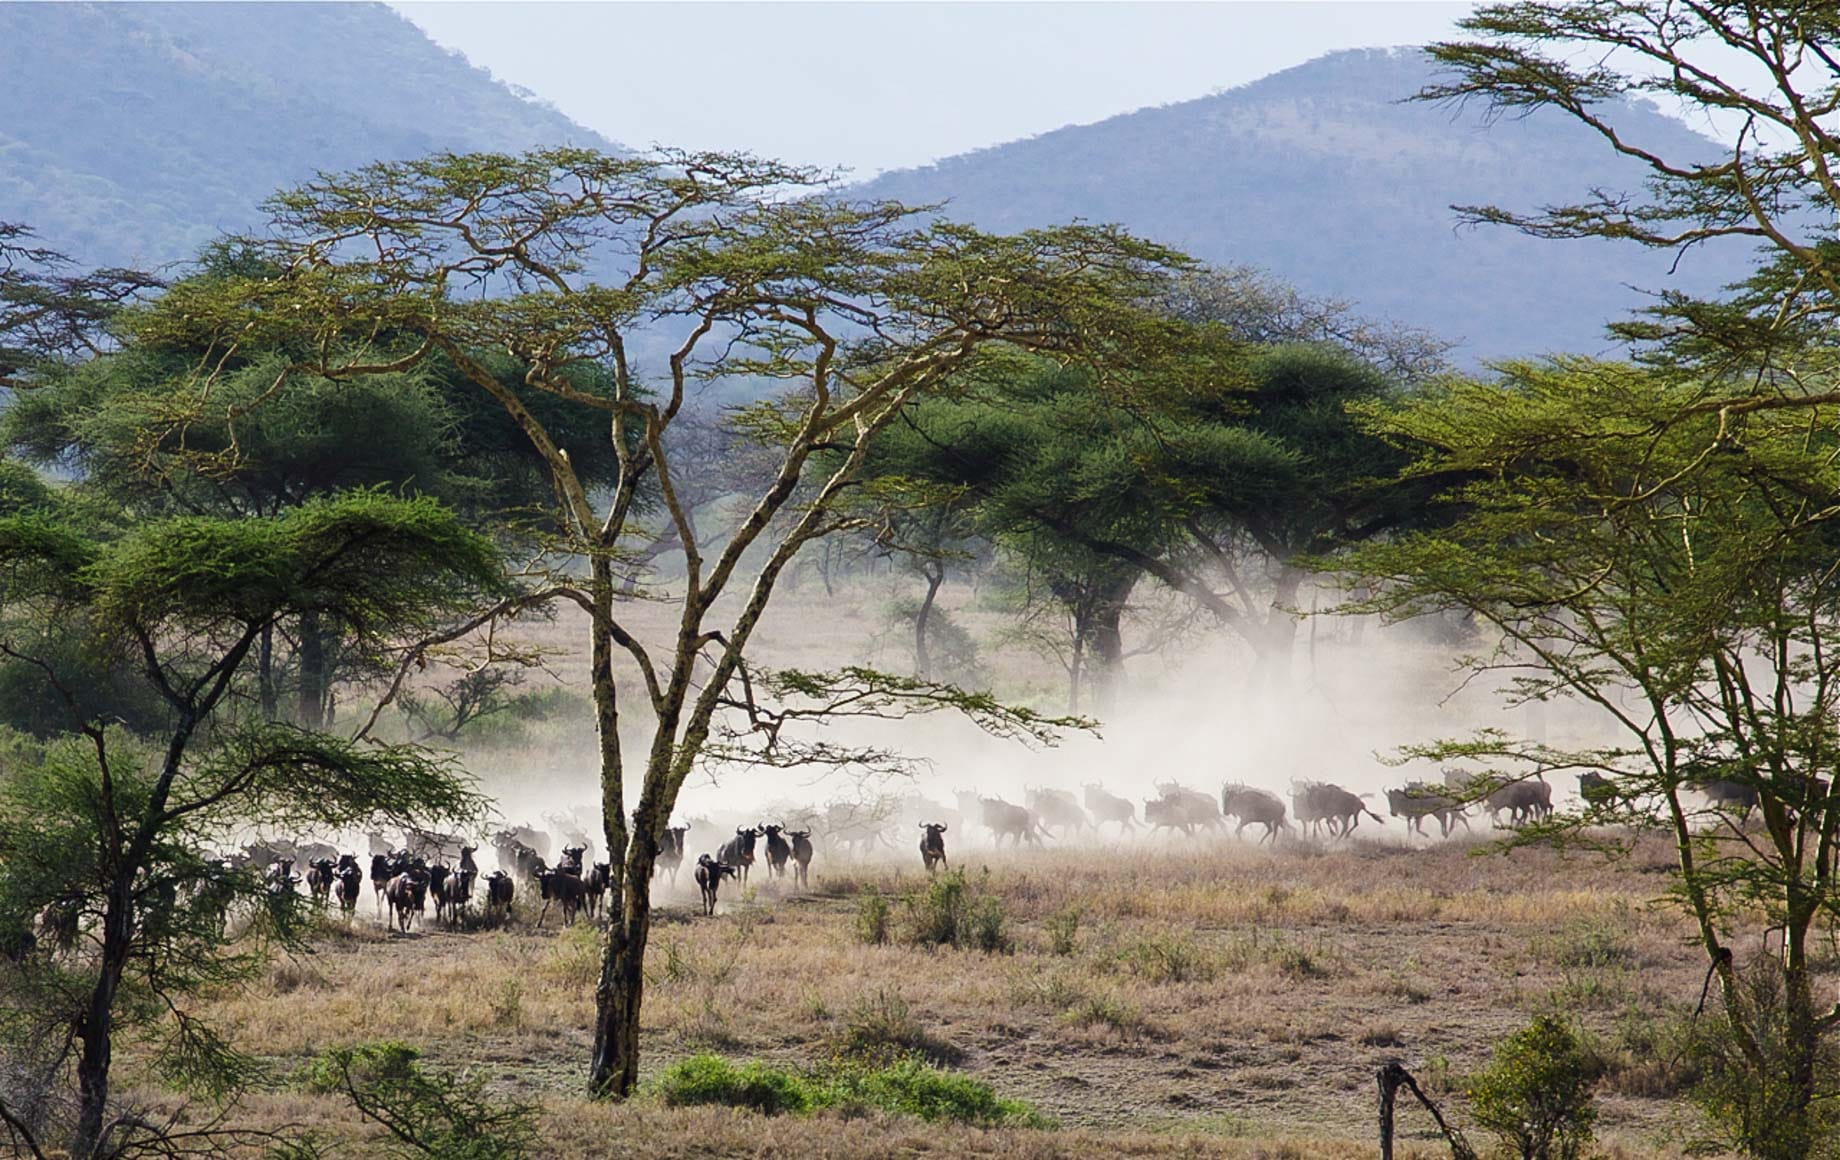 Serengeti safari, Tanzania